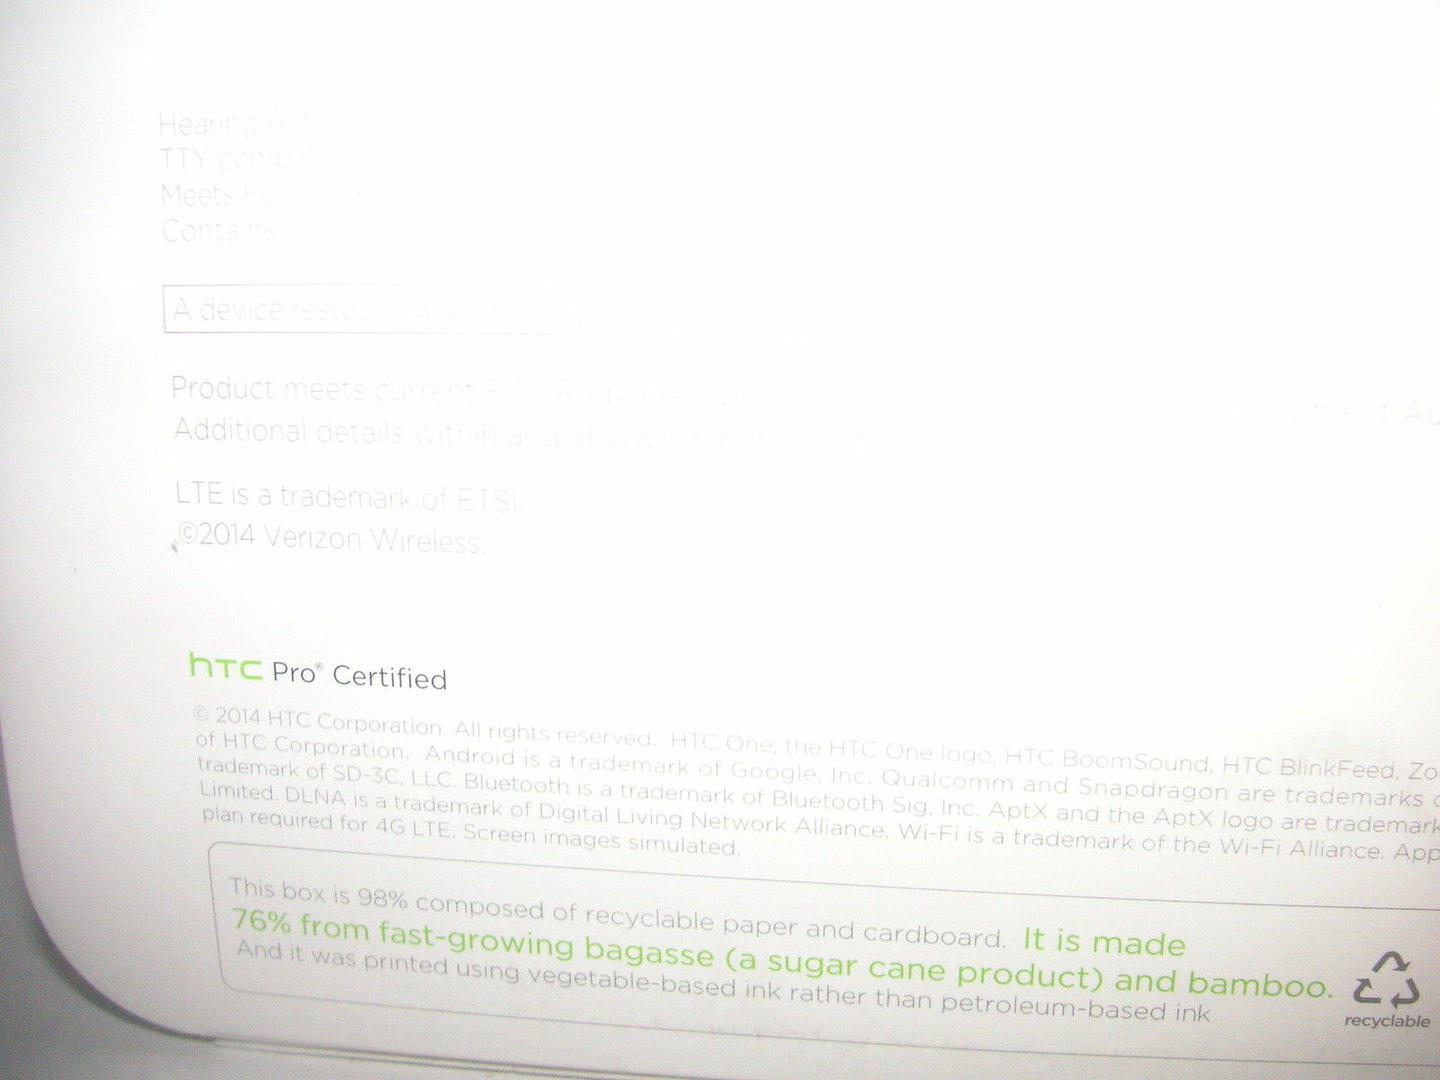 Neues HTC One (Verizon) auf eBay